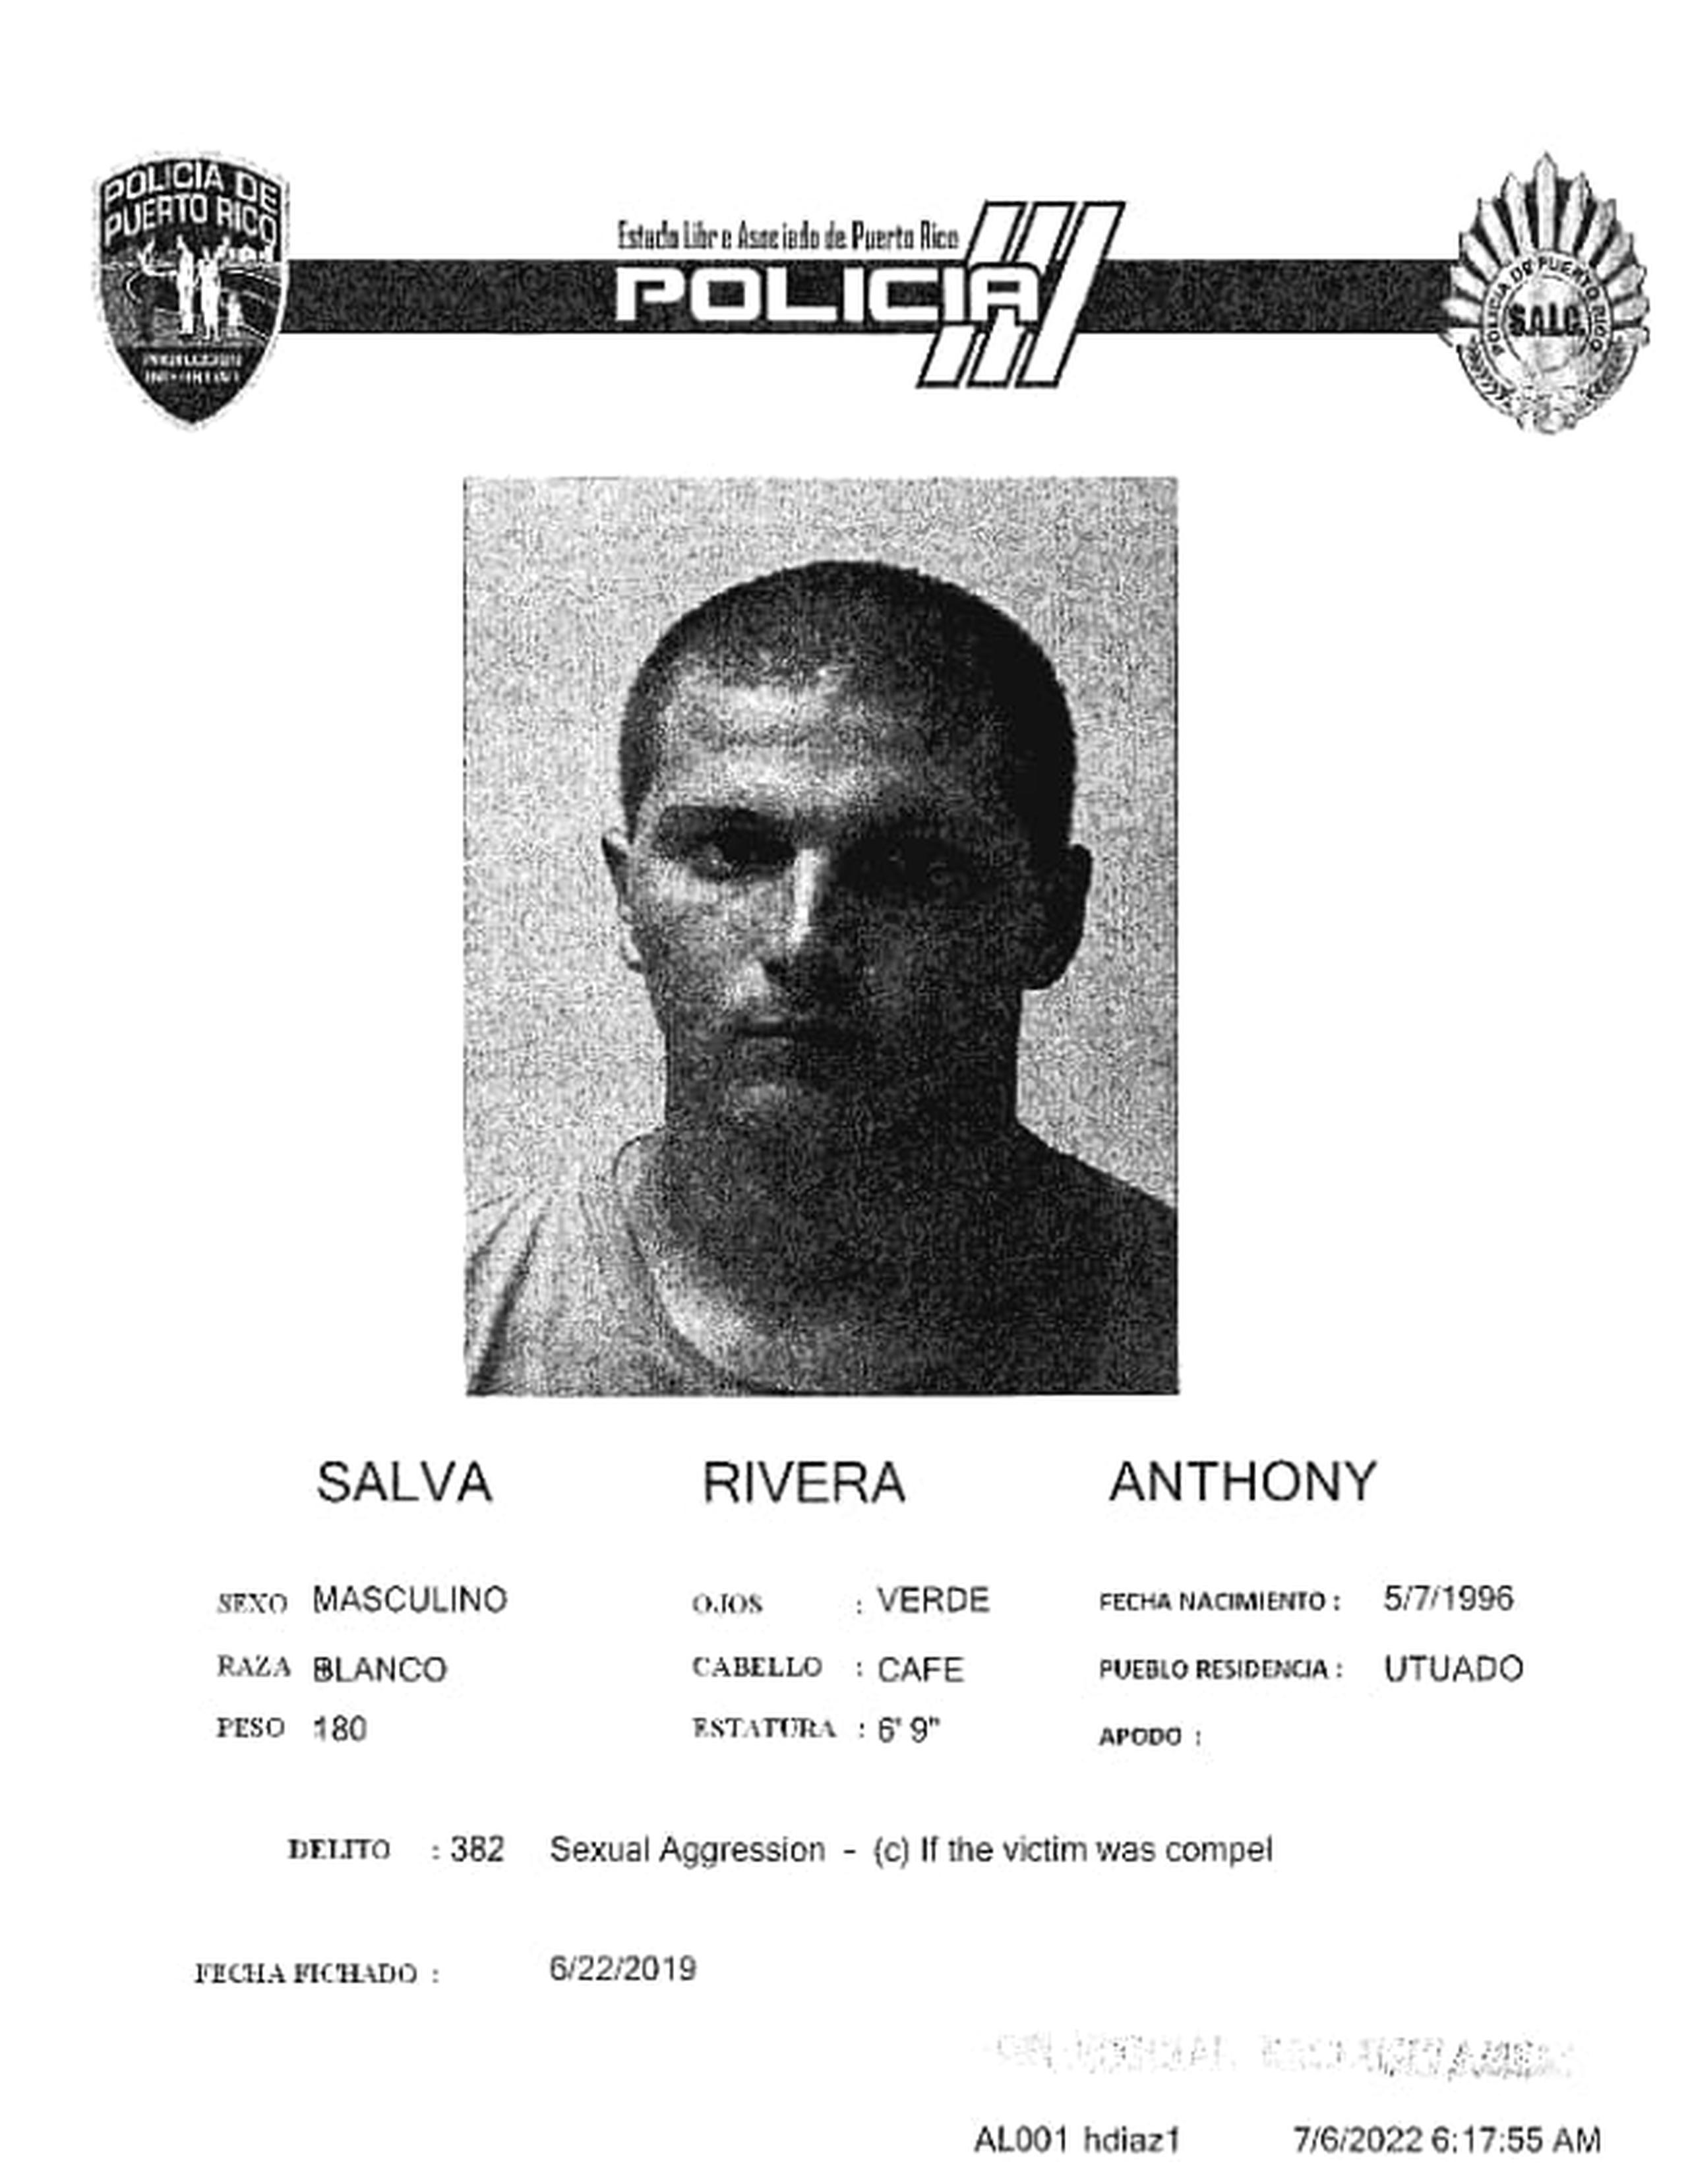 Anthony Salvá Rivera de 26 años, alias Pipi, fue acusado en el 2019 por cargos de exposiones deshonestas, agresión sexual, escalamiento agravado, daños y amenaza, pero solo se sostuvo en el tribunal el cargo por escalamiento.